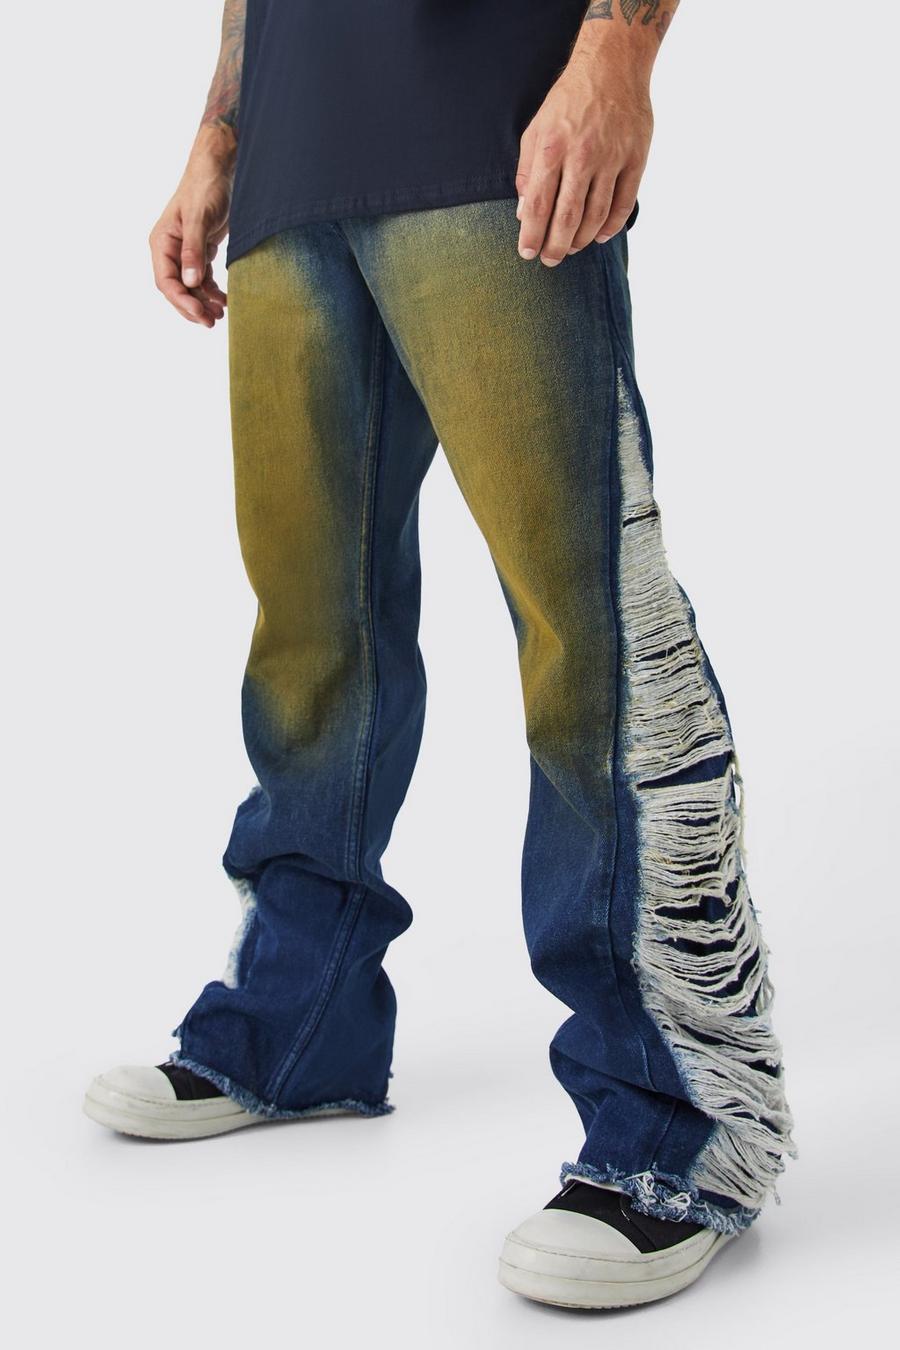 Indigo Extreem Gescheurde Onbewerkte Flared Baggy Jeans